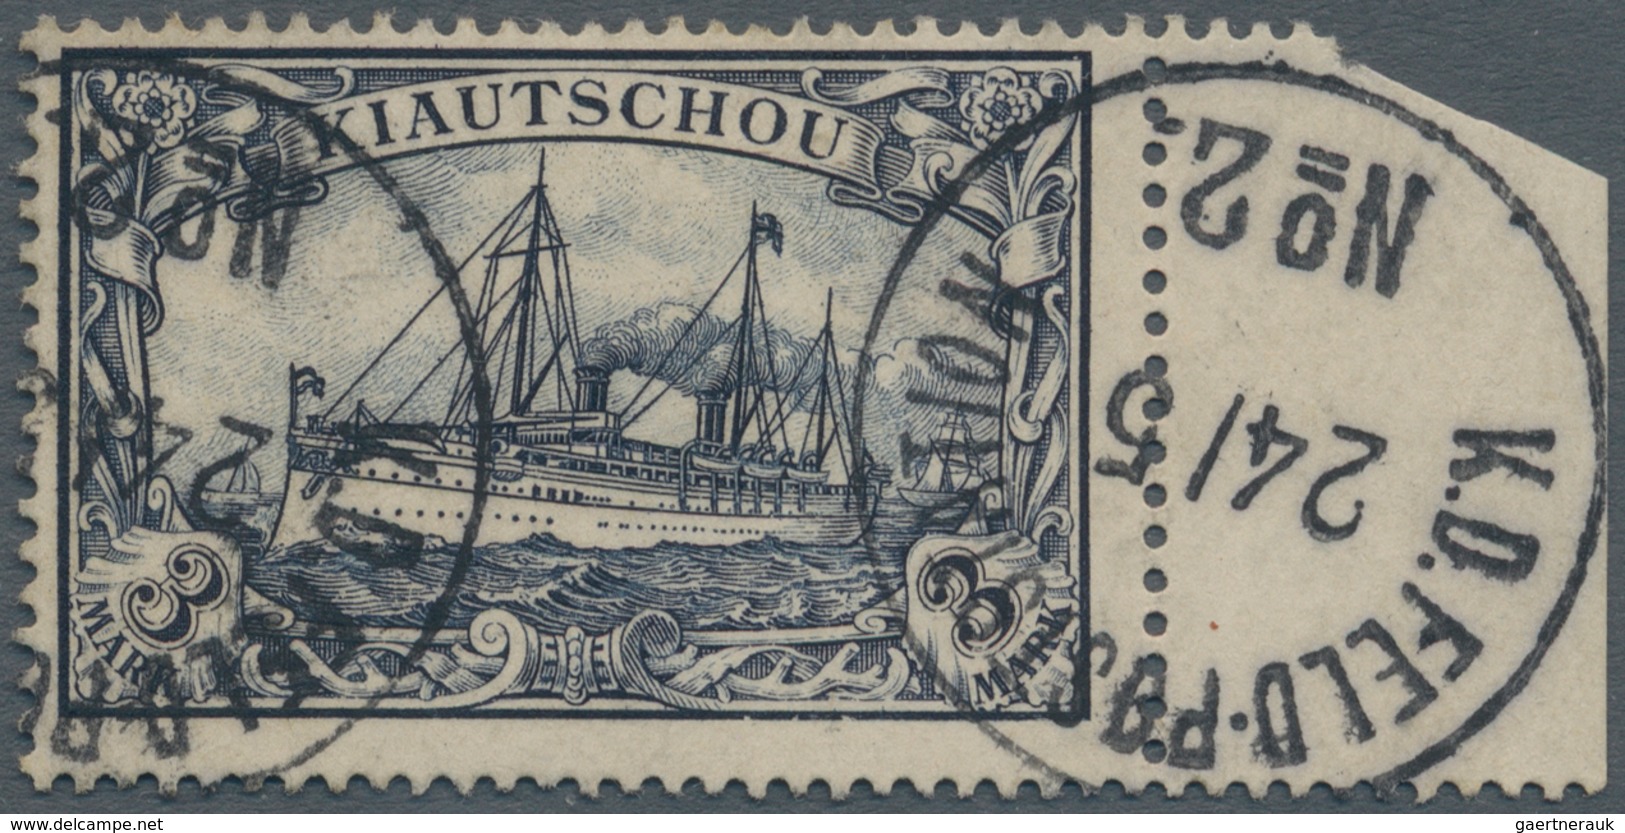 Deutsche Post In China: 1900, Petschili Kiautschou 3 Mark Schiffszeichnung Vom Rechten Bogenrand, Kl - China (offices)